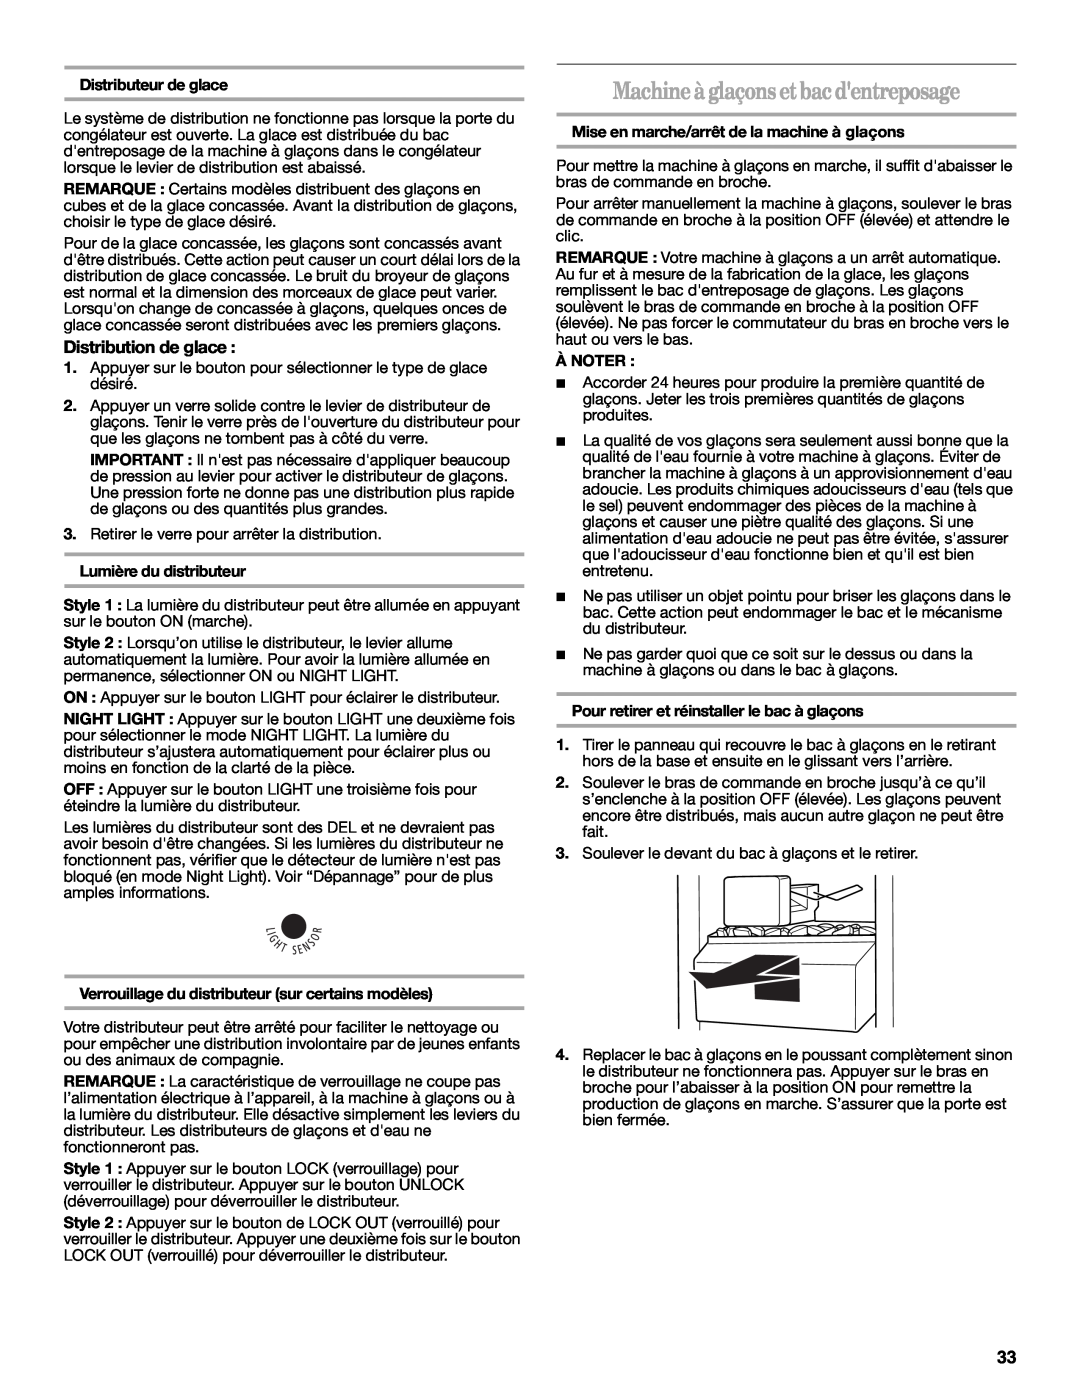 Whirlpool ED7FHEXMQ00 warranty Machineà glaçonsetbacdentreposage, Distribution de glace, Distributeur de glace, À Noter 